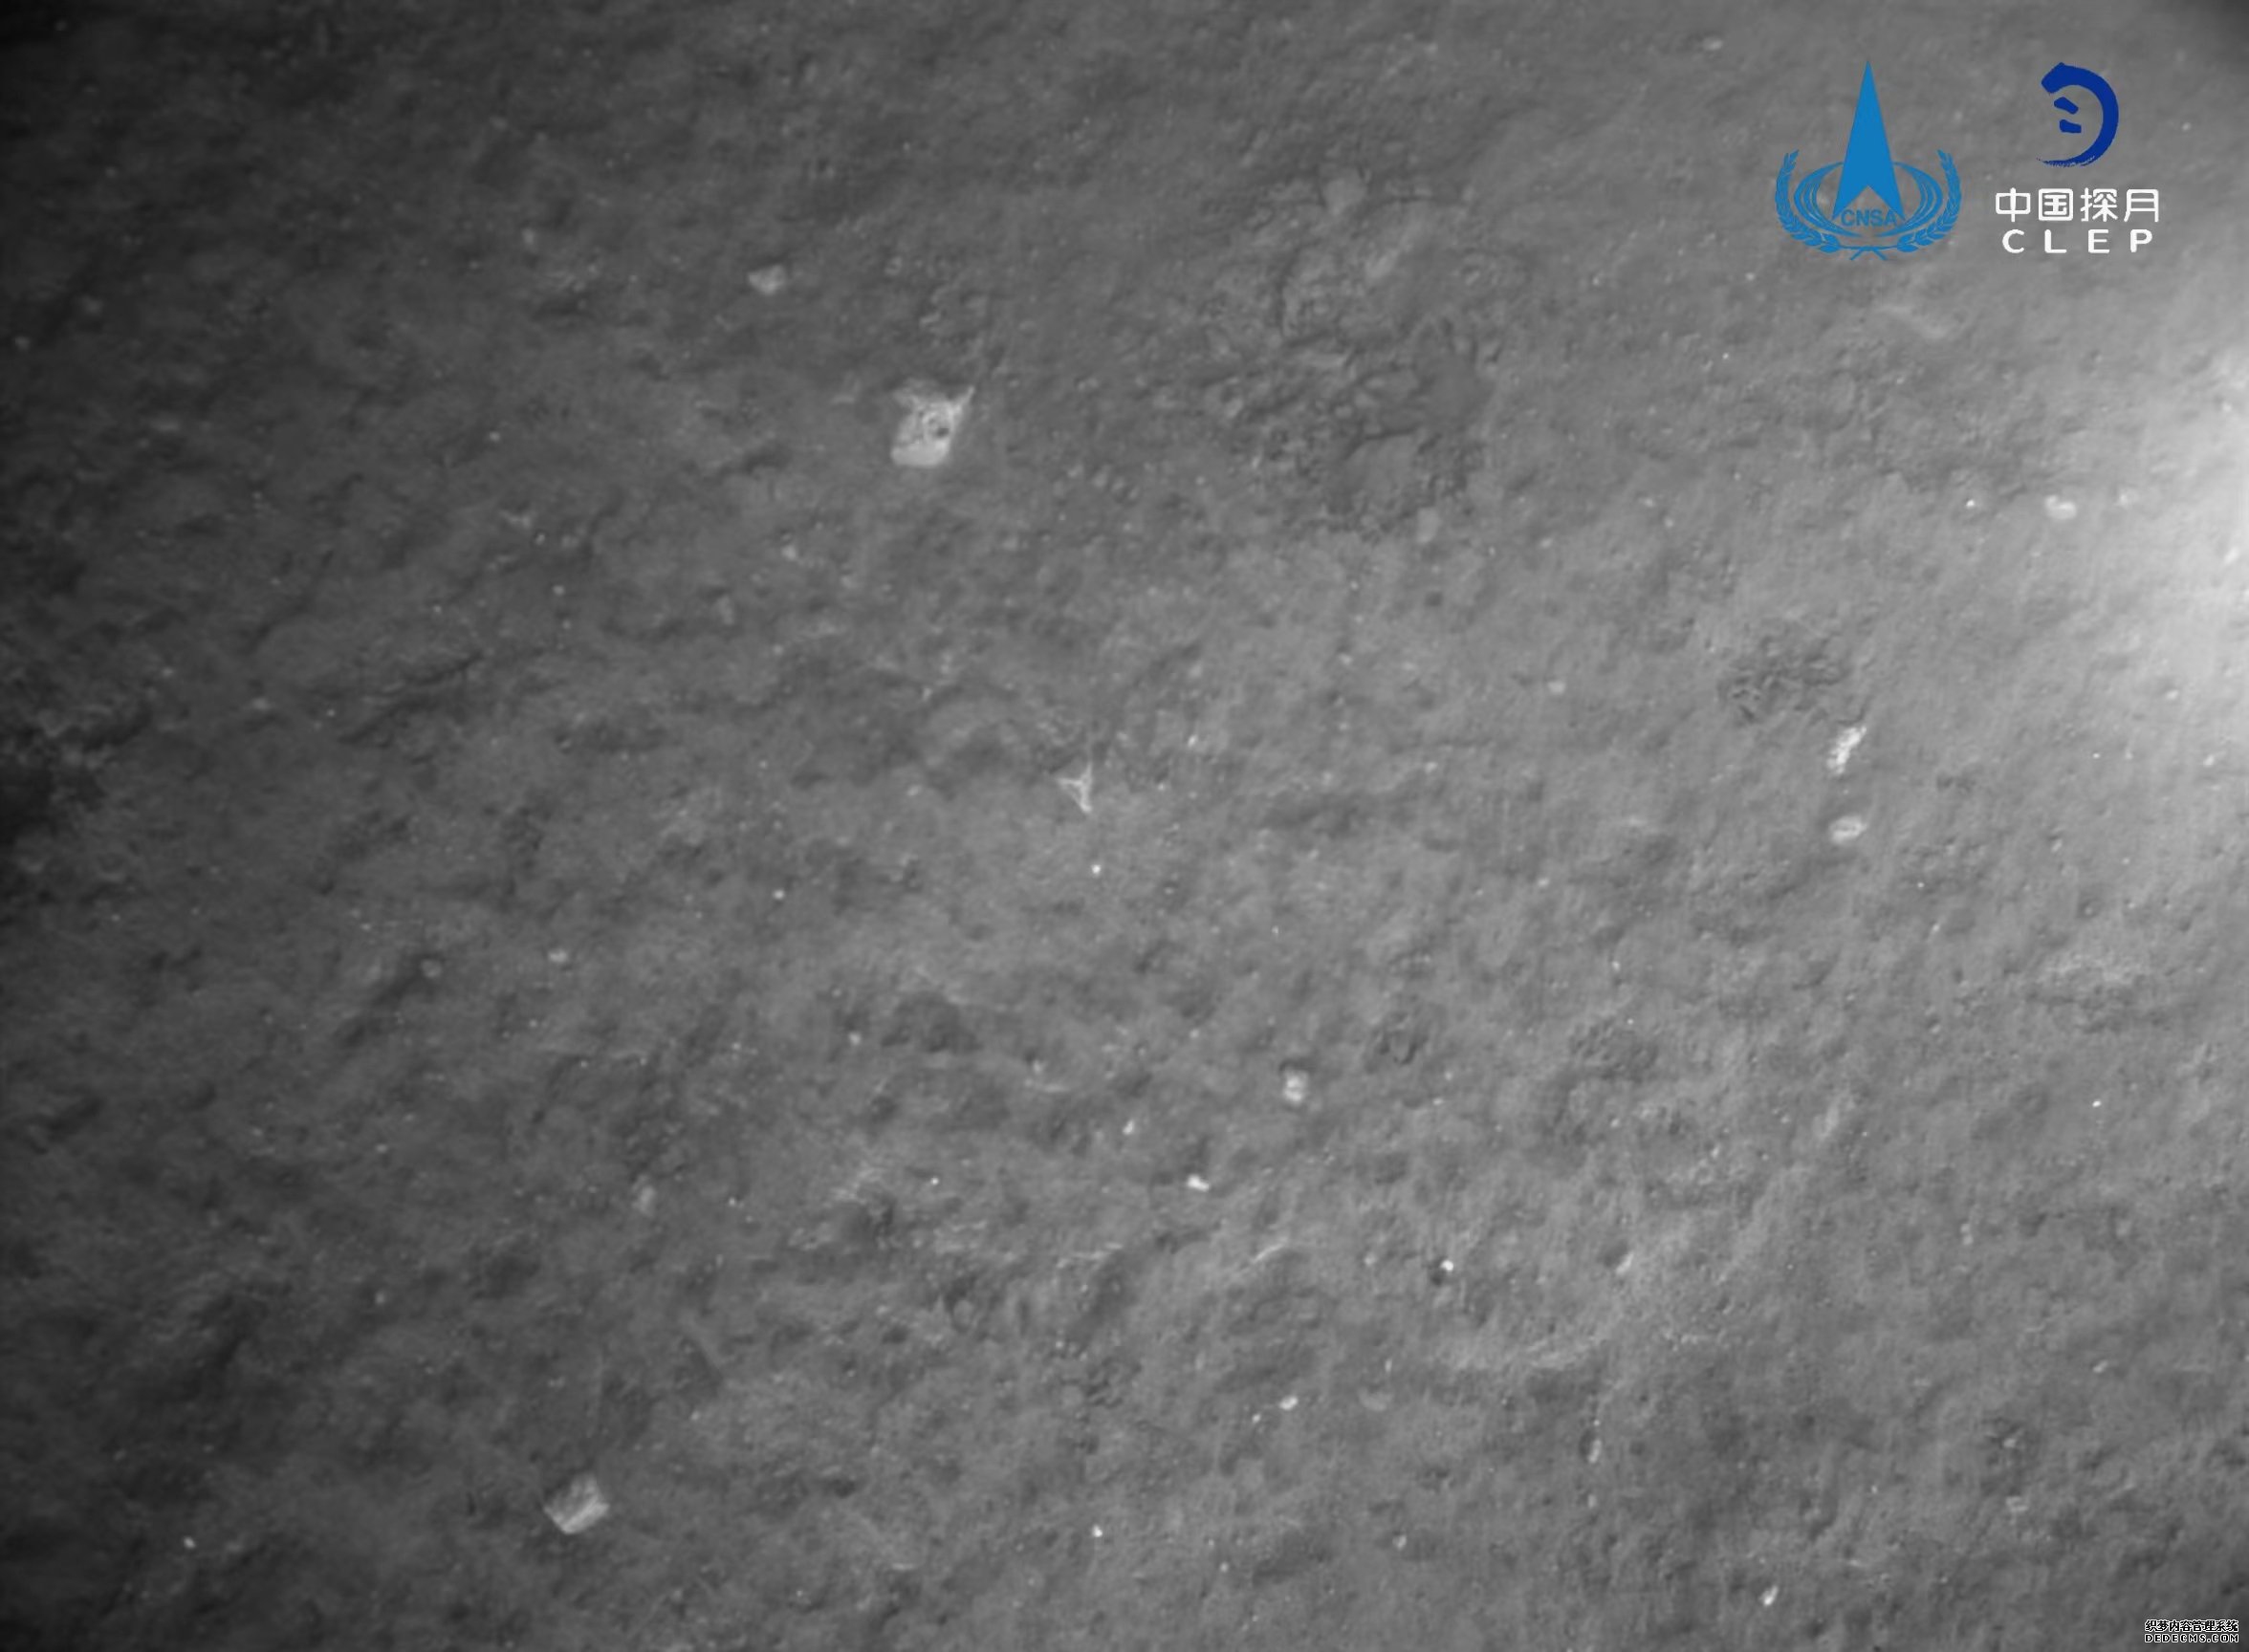 该图由降落相机在着陆器安全着陆后拍摄，图像显示着陆器底部相对平坦，分布有少量亮色石块。